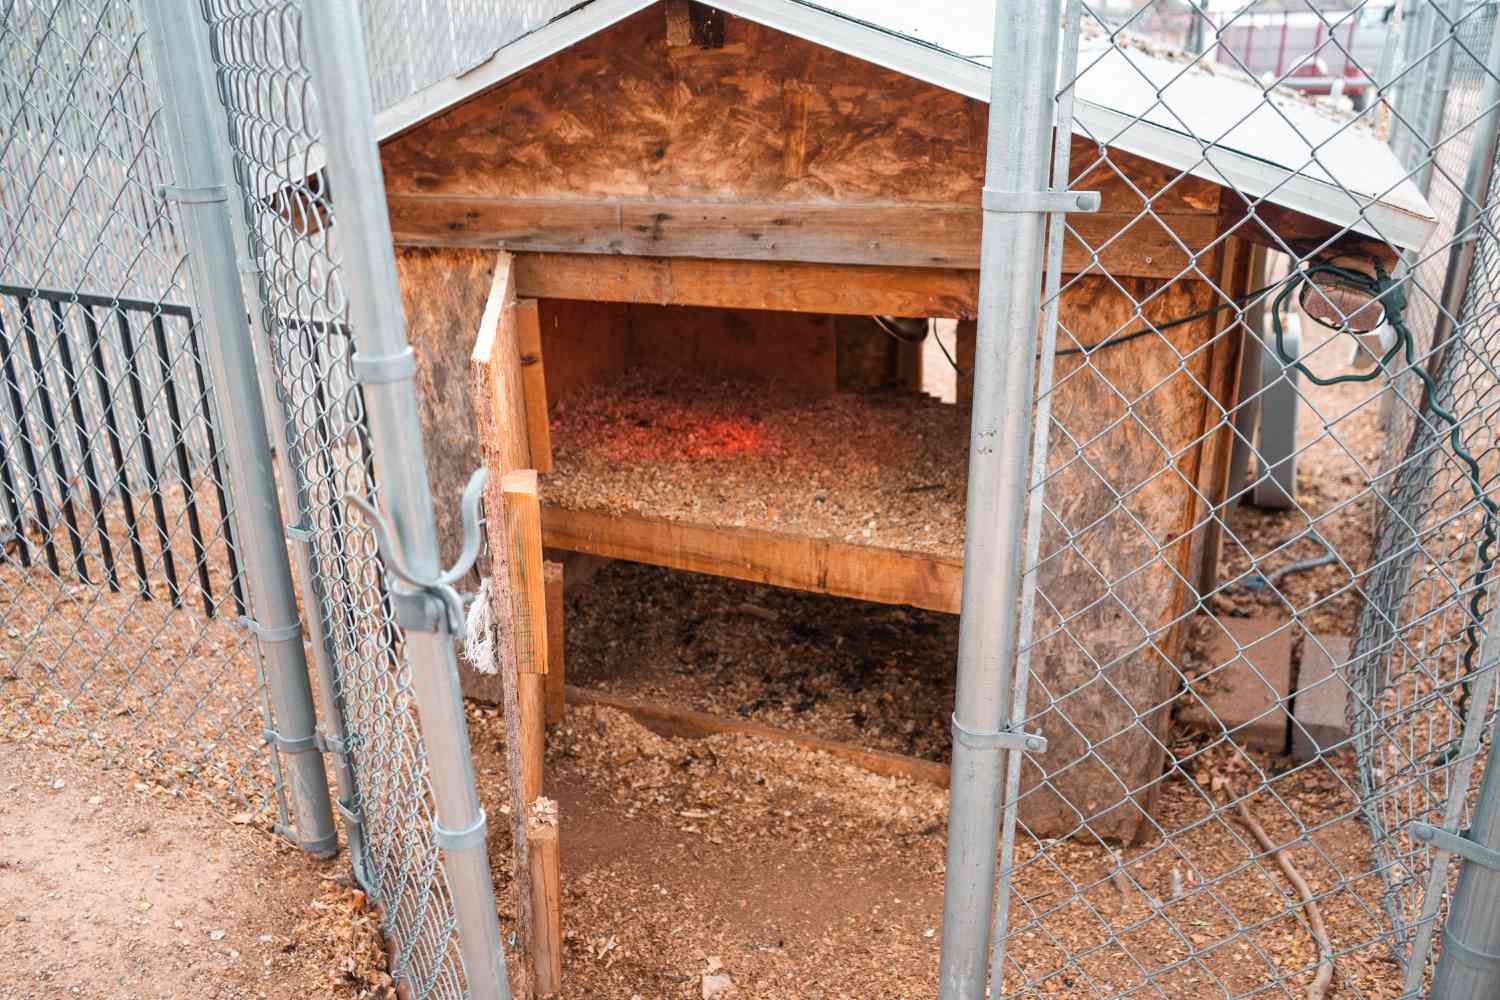 Puerta vallada y puerta del gallinero abierta revelando dos suelos sólidos en el interior del gallinero